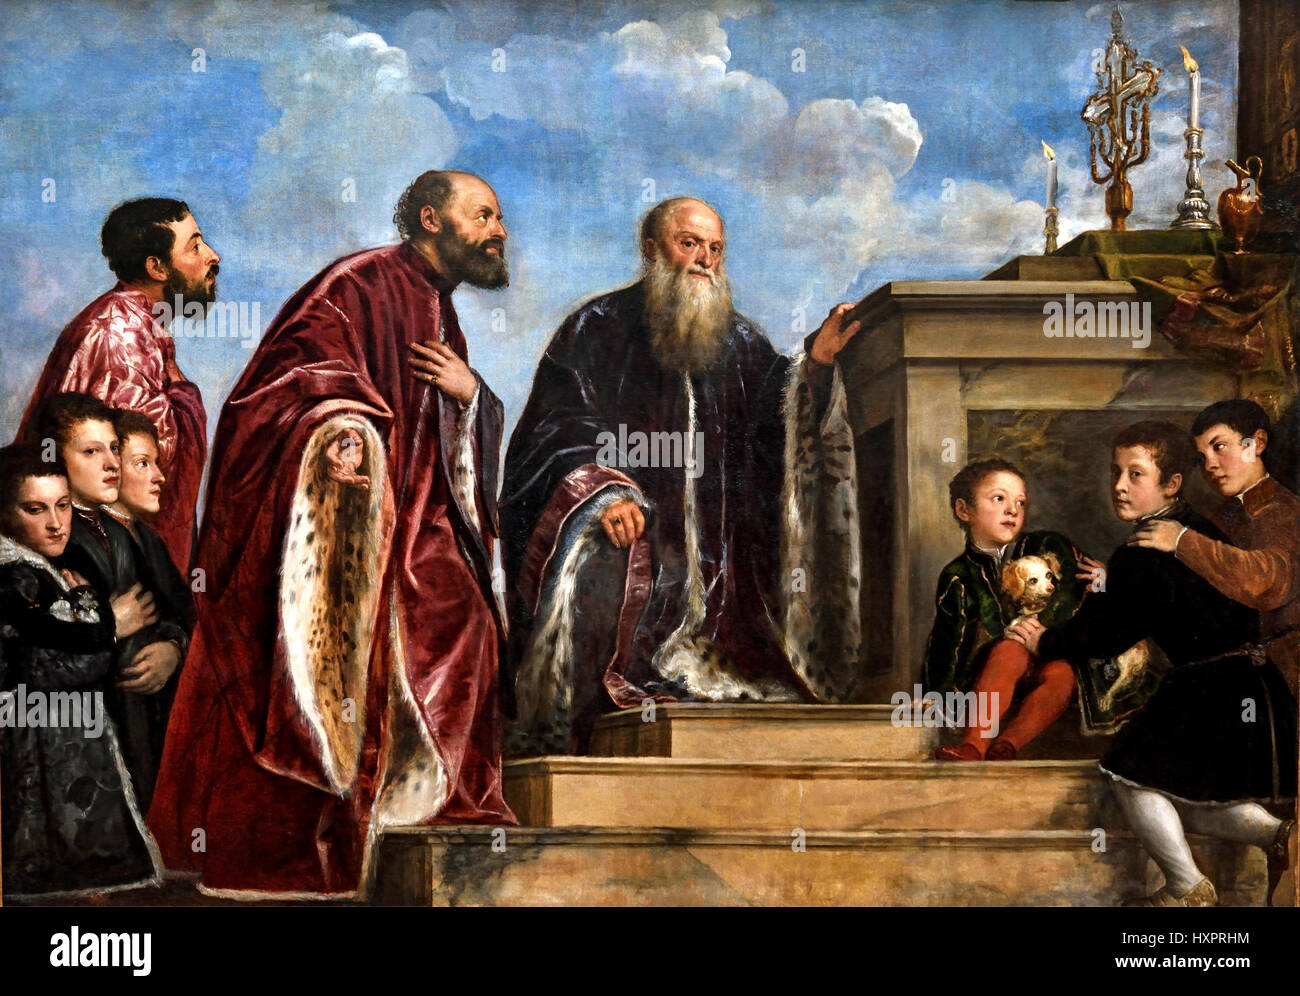 La famille Vendramin 1540-45 ou Berthe Morisot Tiziano Vecellio1490 - 1576 Titien peintre italien du xvie siècle école Vénitienne Venise Italie Banque D'Images